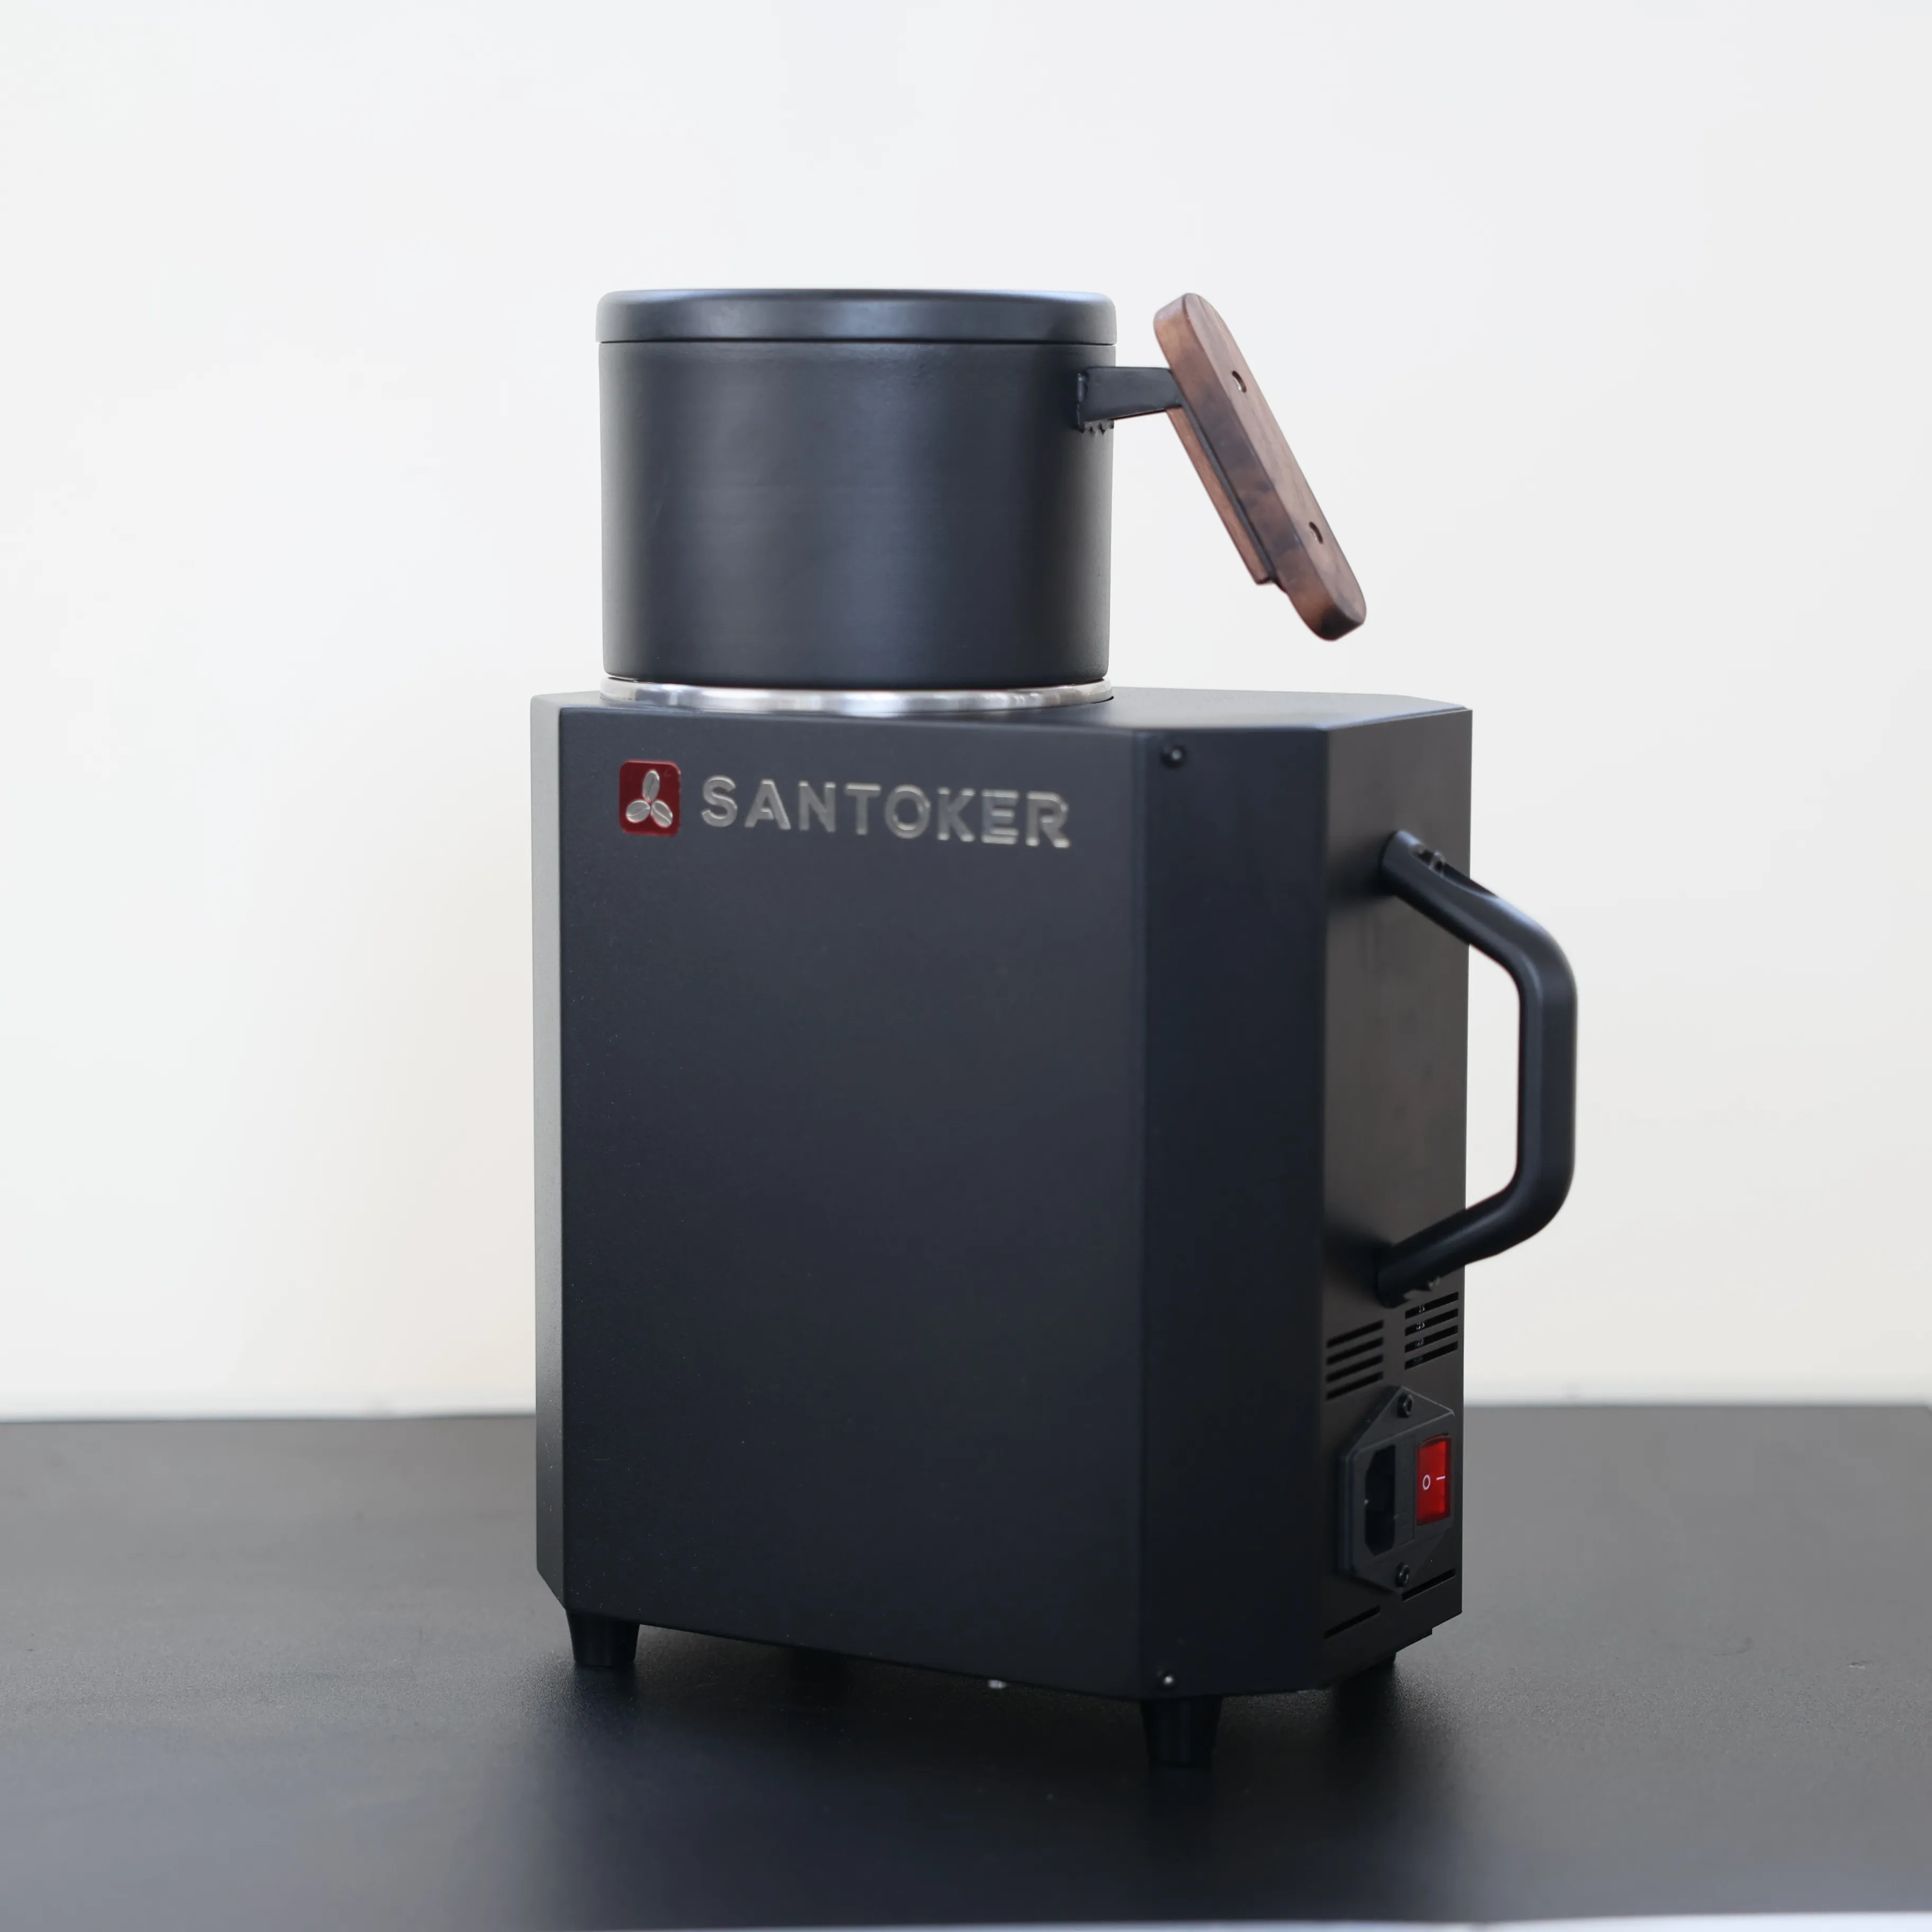 SANTOKER Cube10 100 גרם מכונת קפה מסחרית באוויר חם מכונת קפה קטנה בלוטות' חכמה מסחרית מכונת קליית קפה